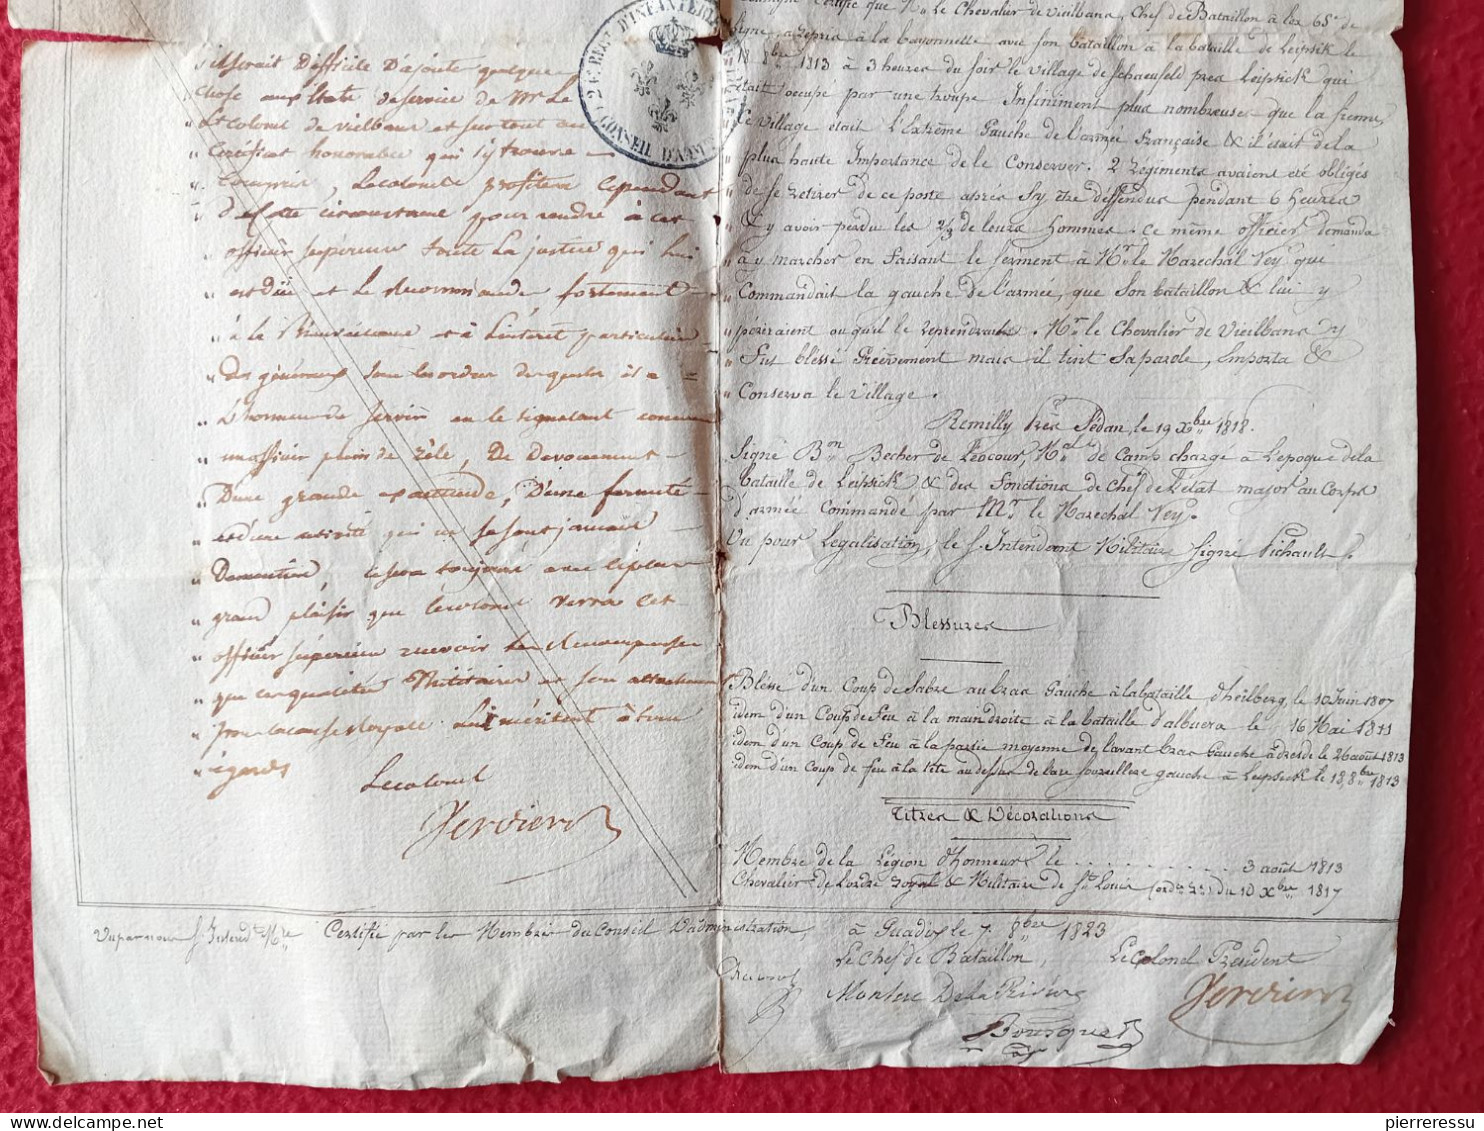 DIPOLME BREVET CERTIFICAT GARDE IMPERIALE VIEILBANS JACQUES 1823 A GUADIX EXPEDITION D ESPAGNE AUTOGRAPHES - Documenten